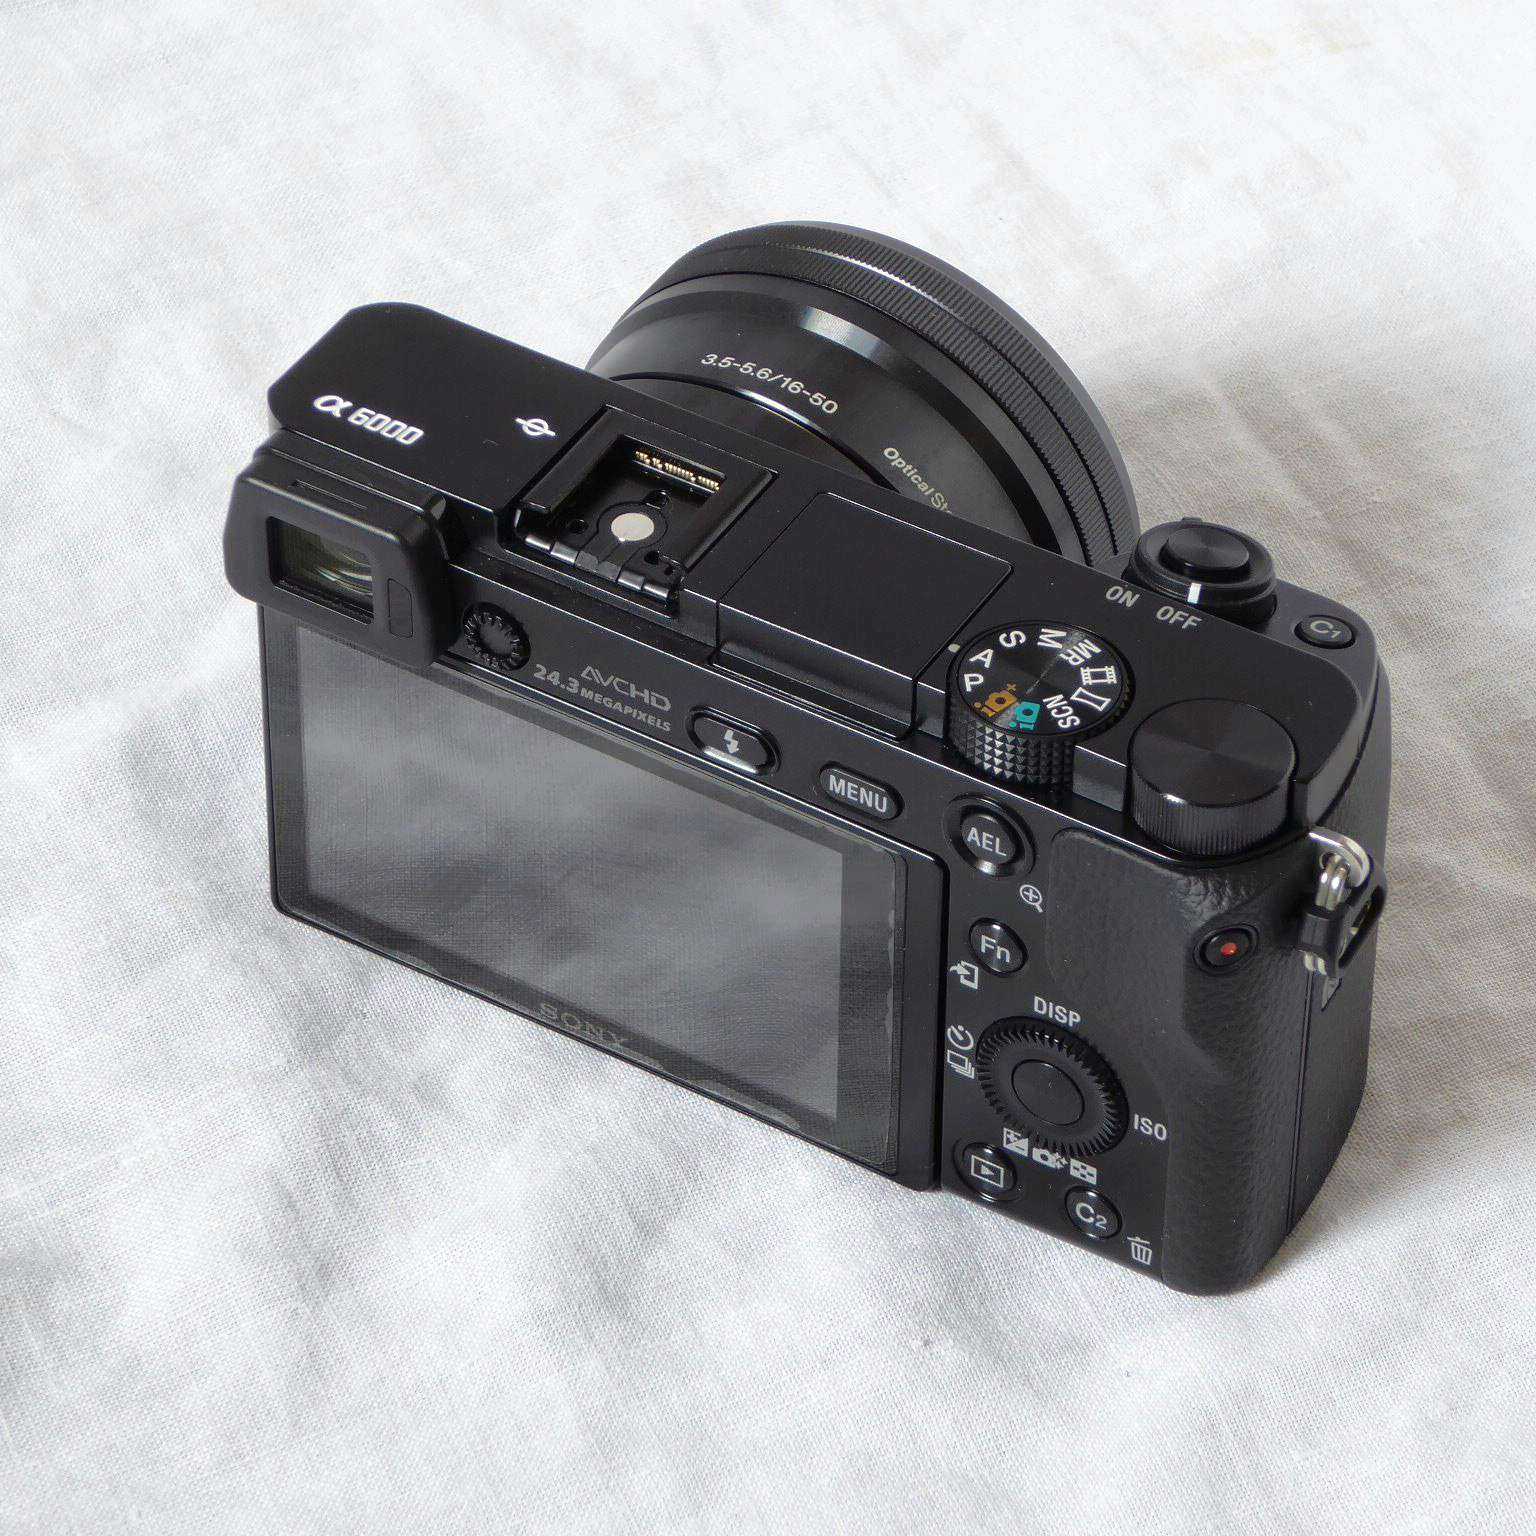 Цифровой фотоаппарат Sony Alpha a6000 - подробные характеристики обзоры видео фото Цены в интернет-магазинах где можно купить цифровую фотоаппарат Sony Alpha a6000